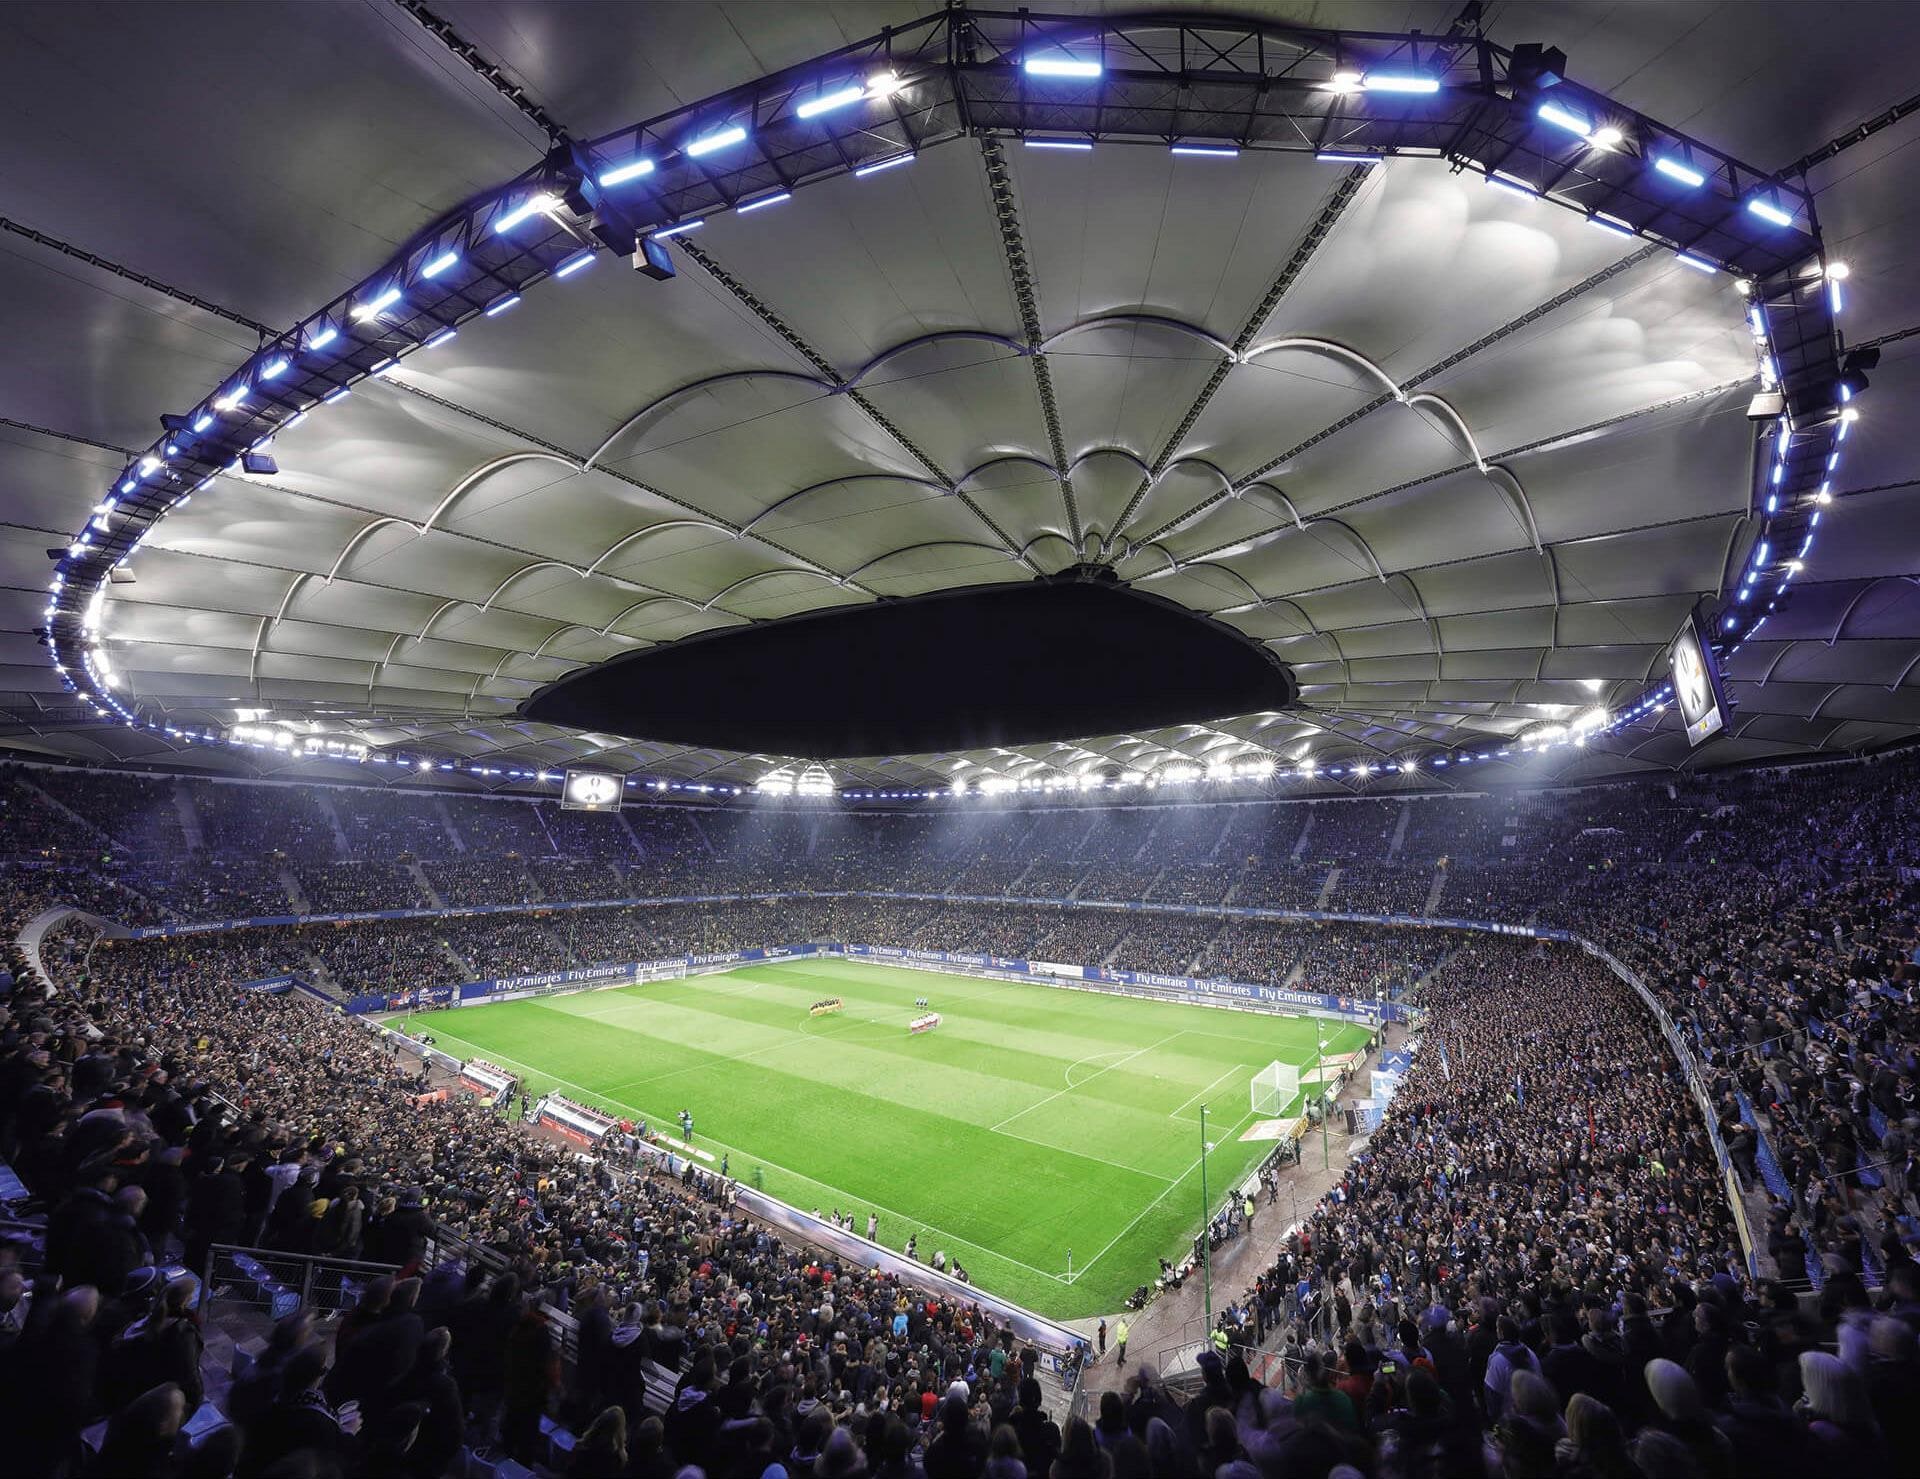 Vliestapete »Hamburger SV im Stadion bei Nacht«, made in Berlin